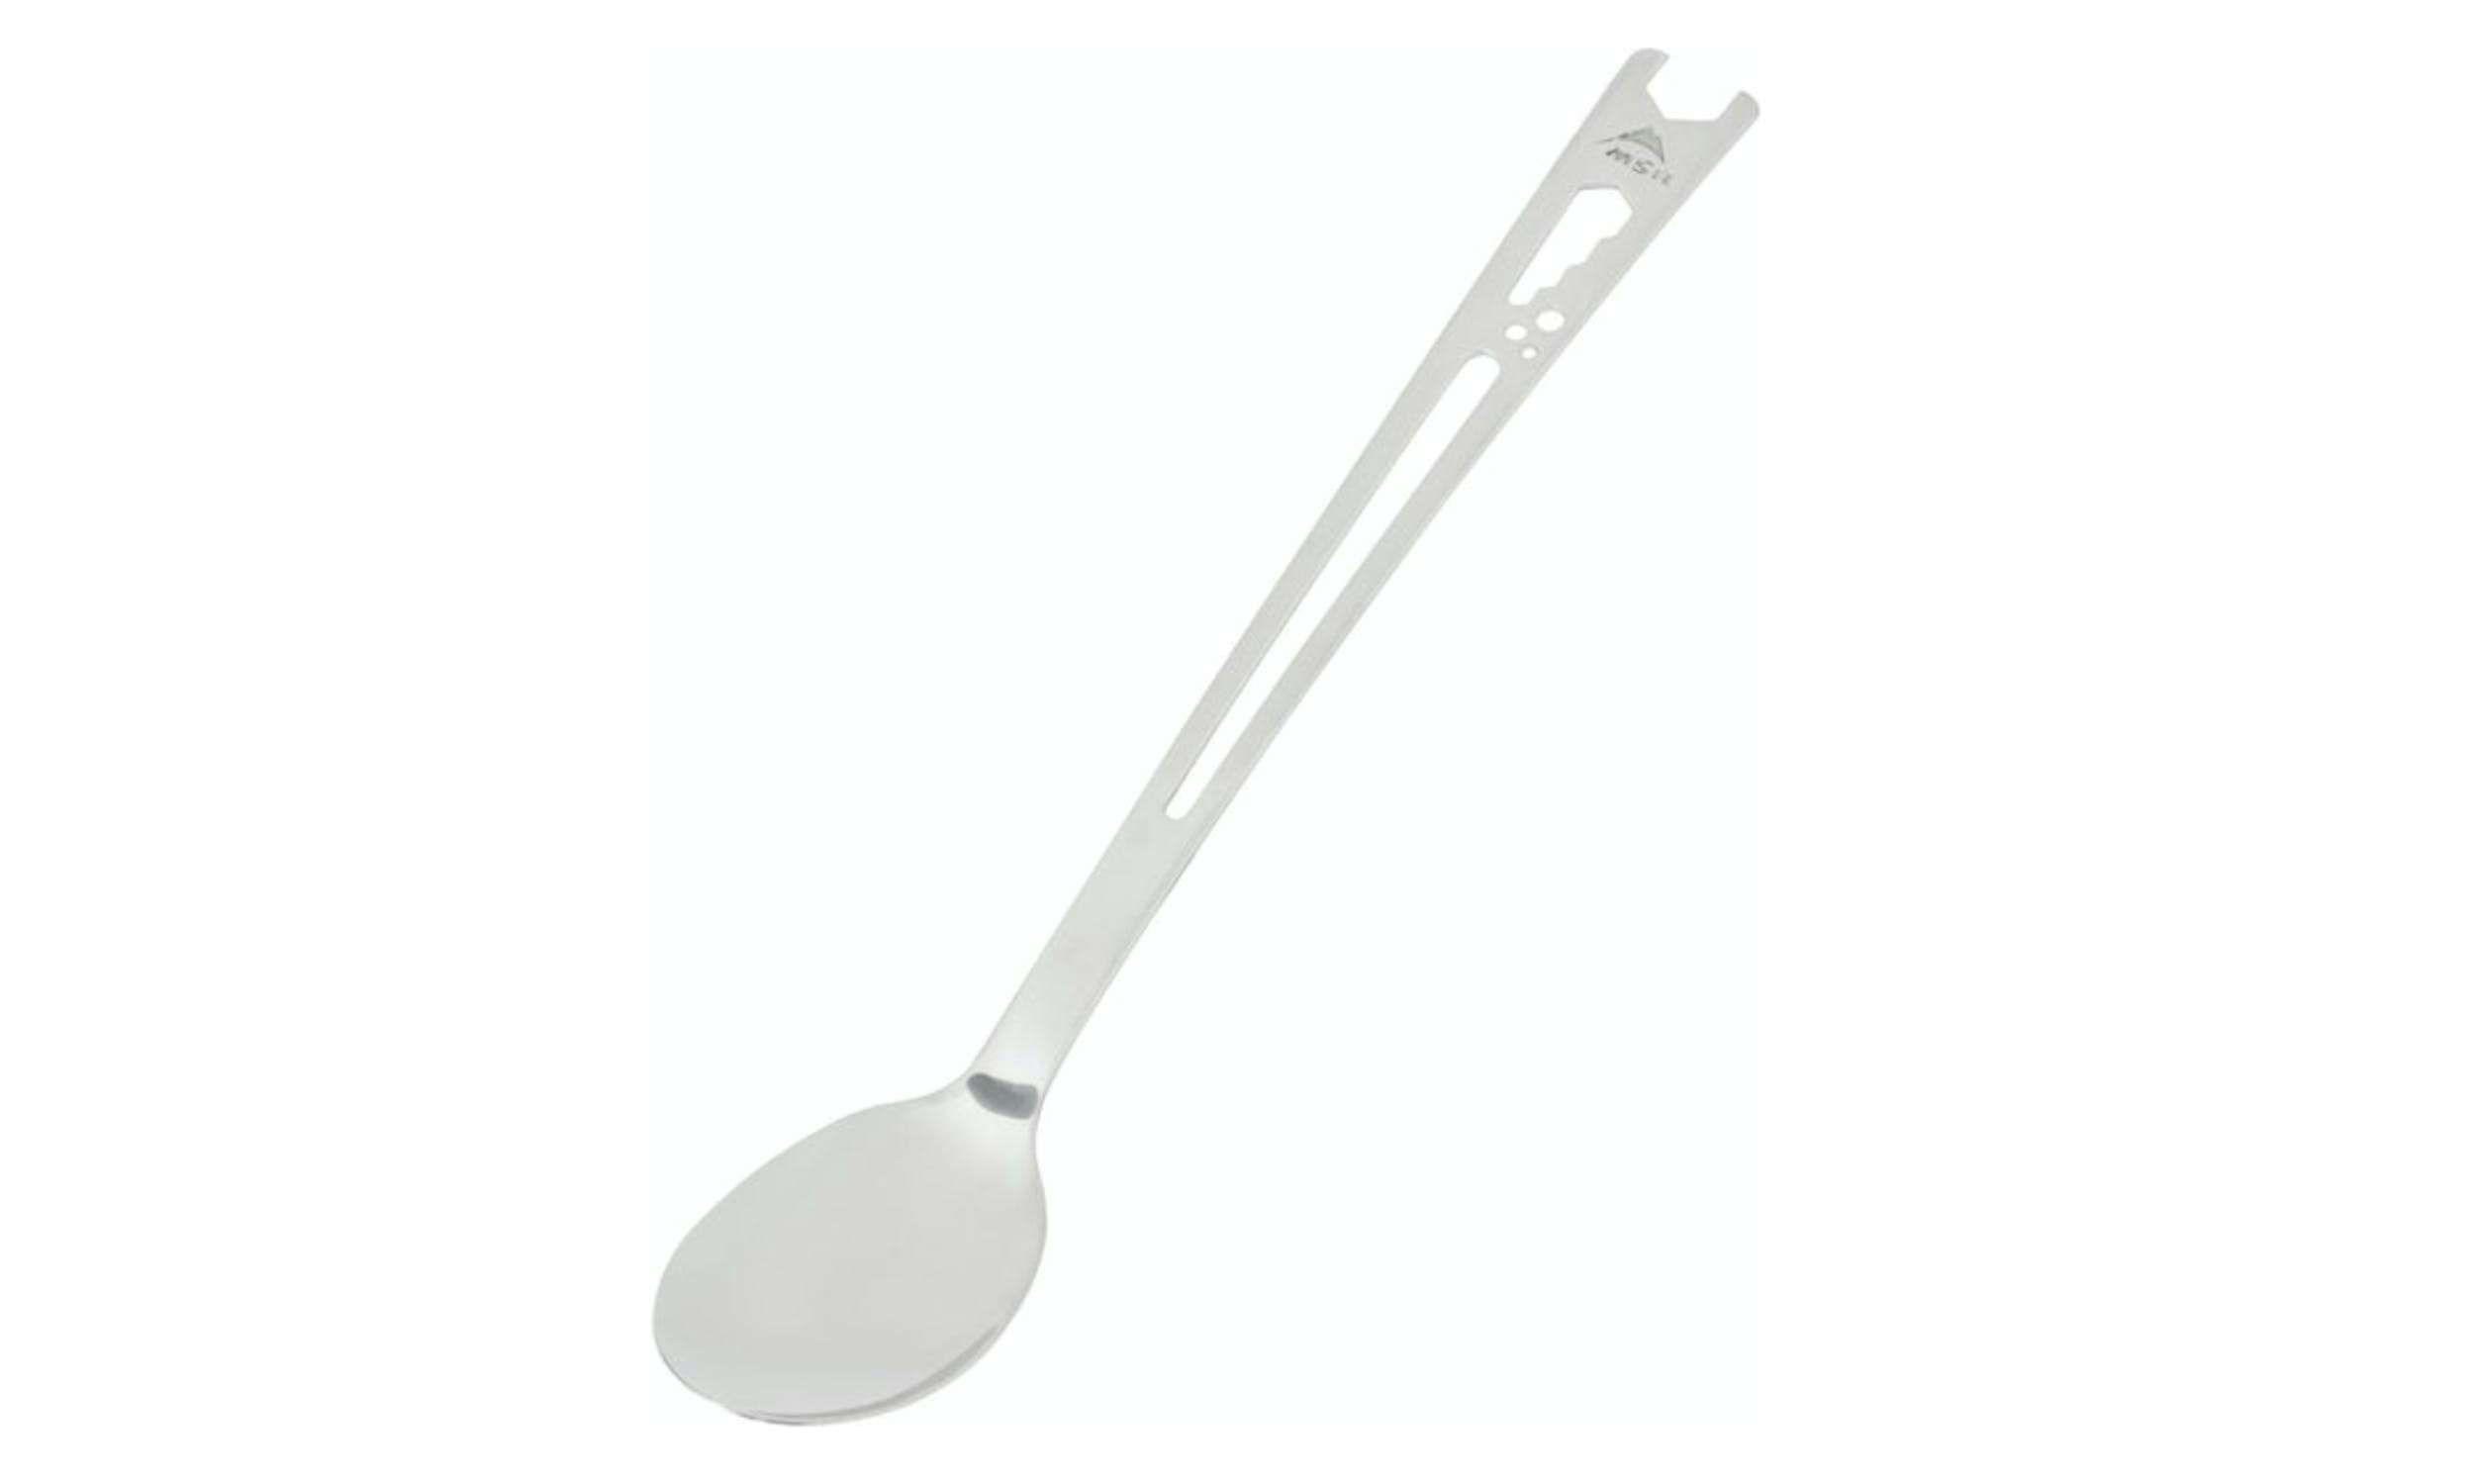 MSR long spoon